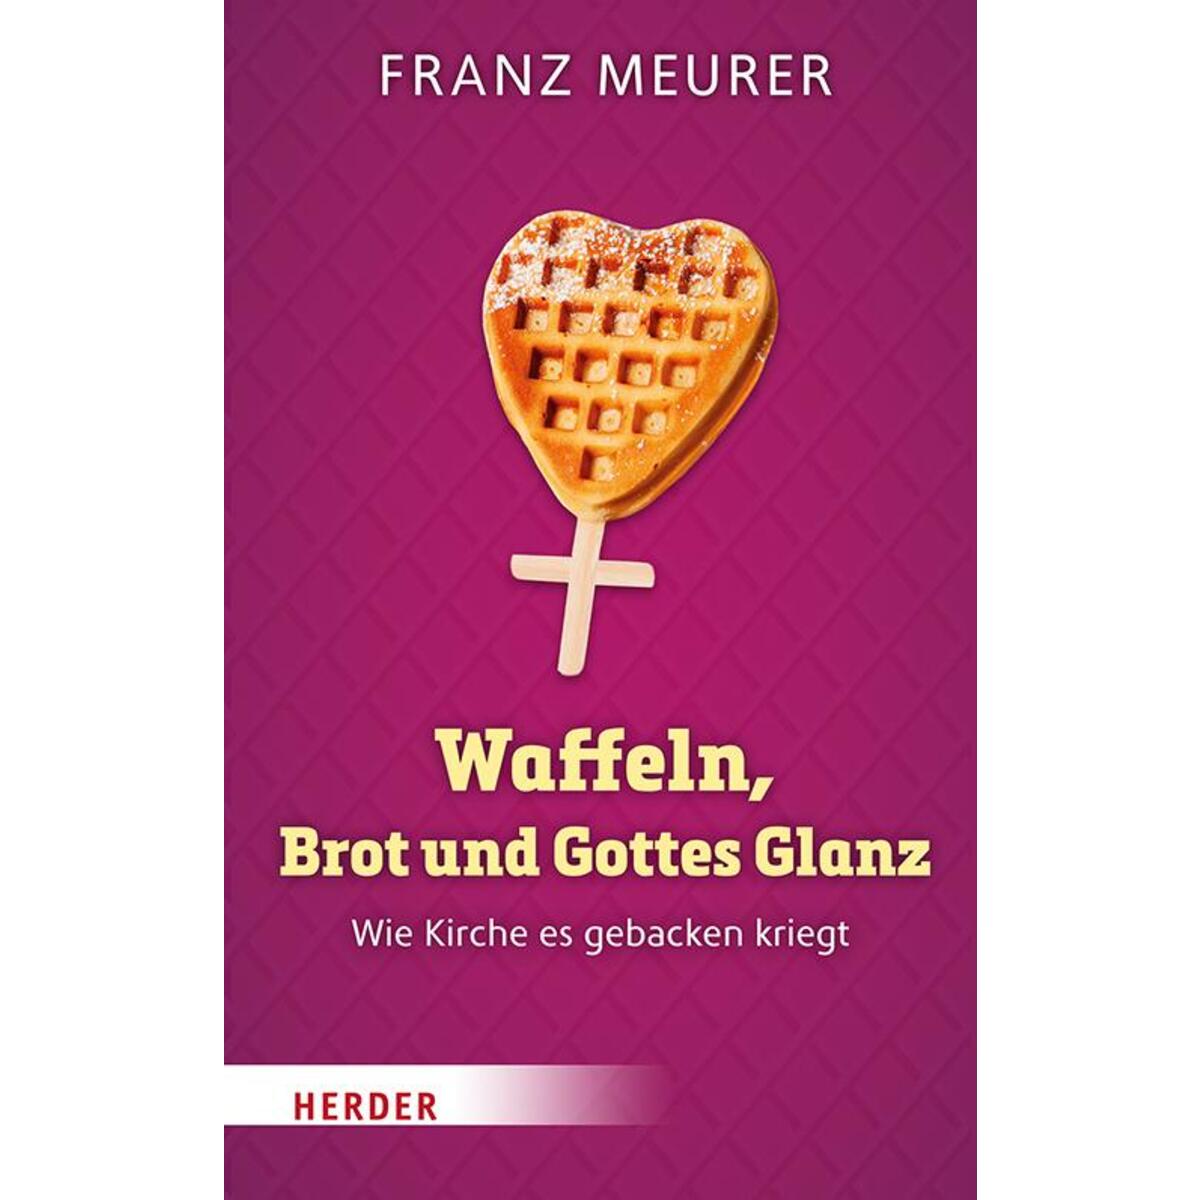 Waffeln, Brot und Gottes Glanz von Herder Verlag GmbH